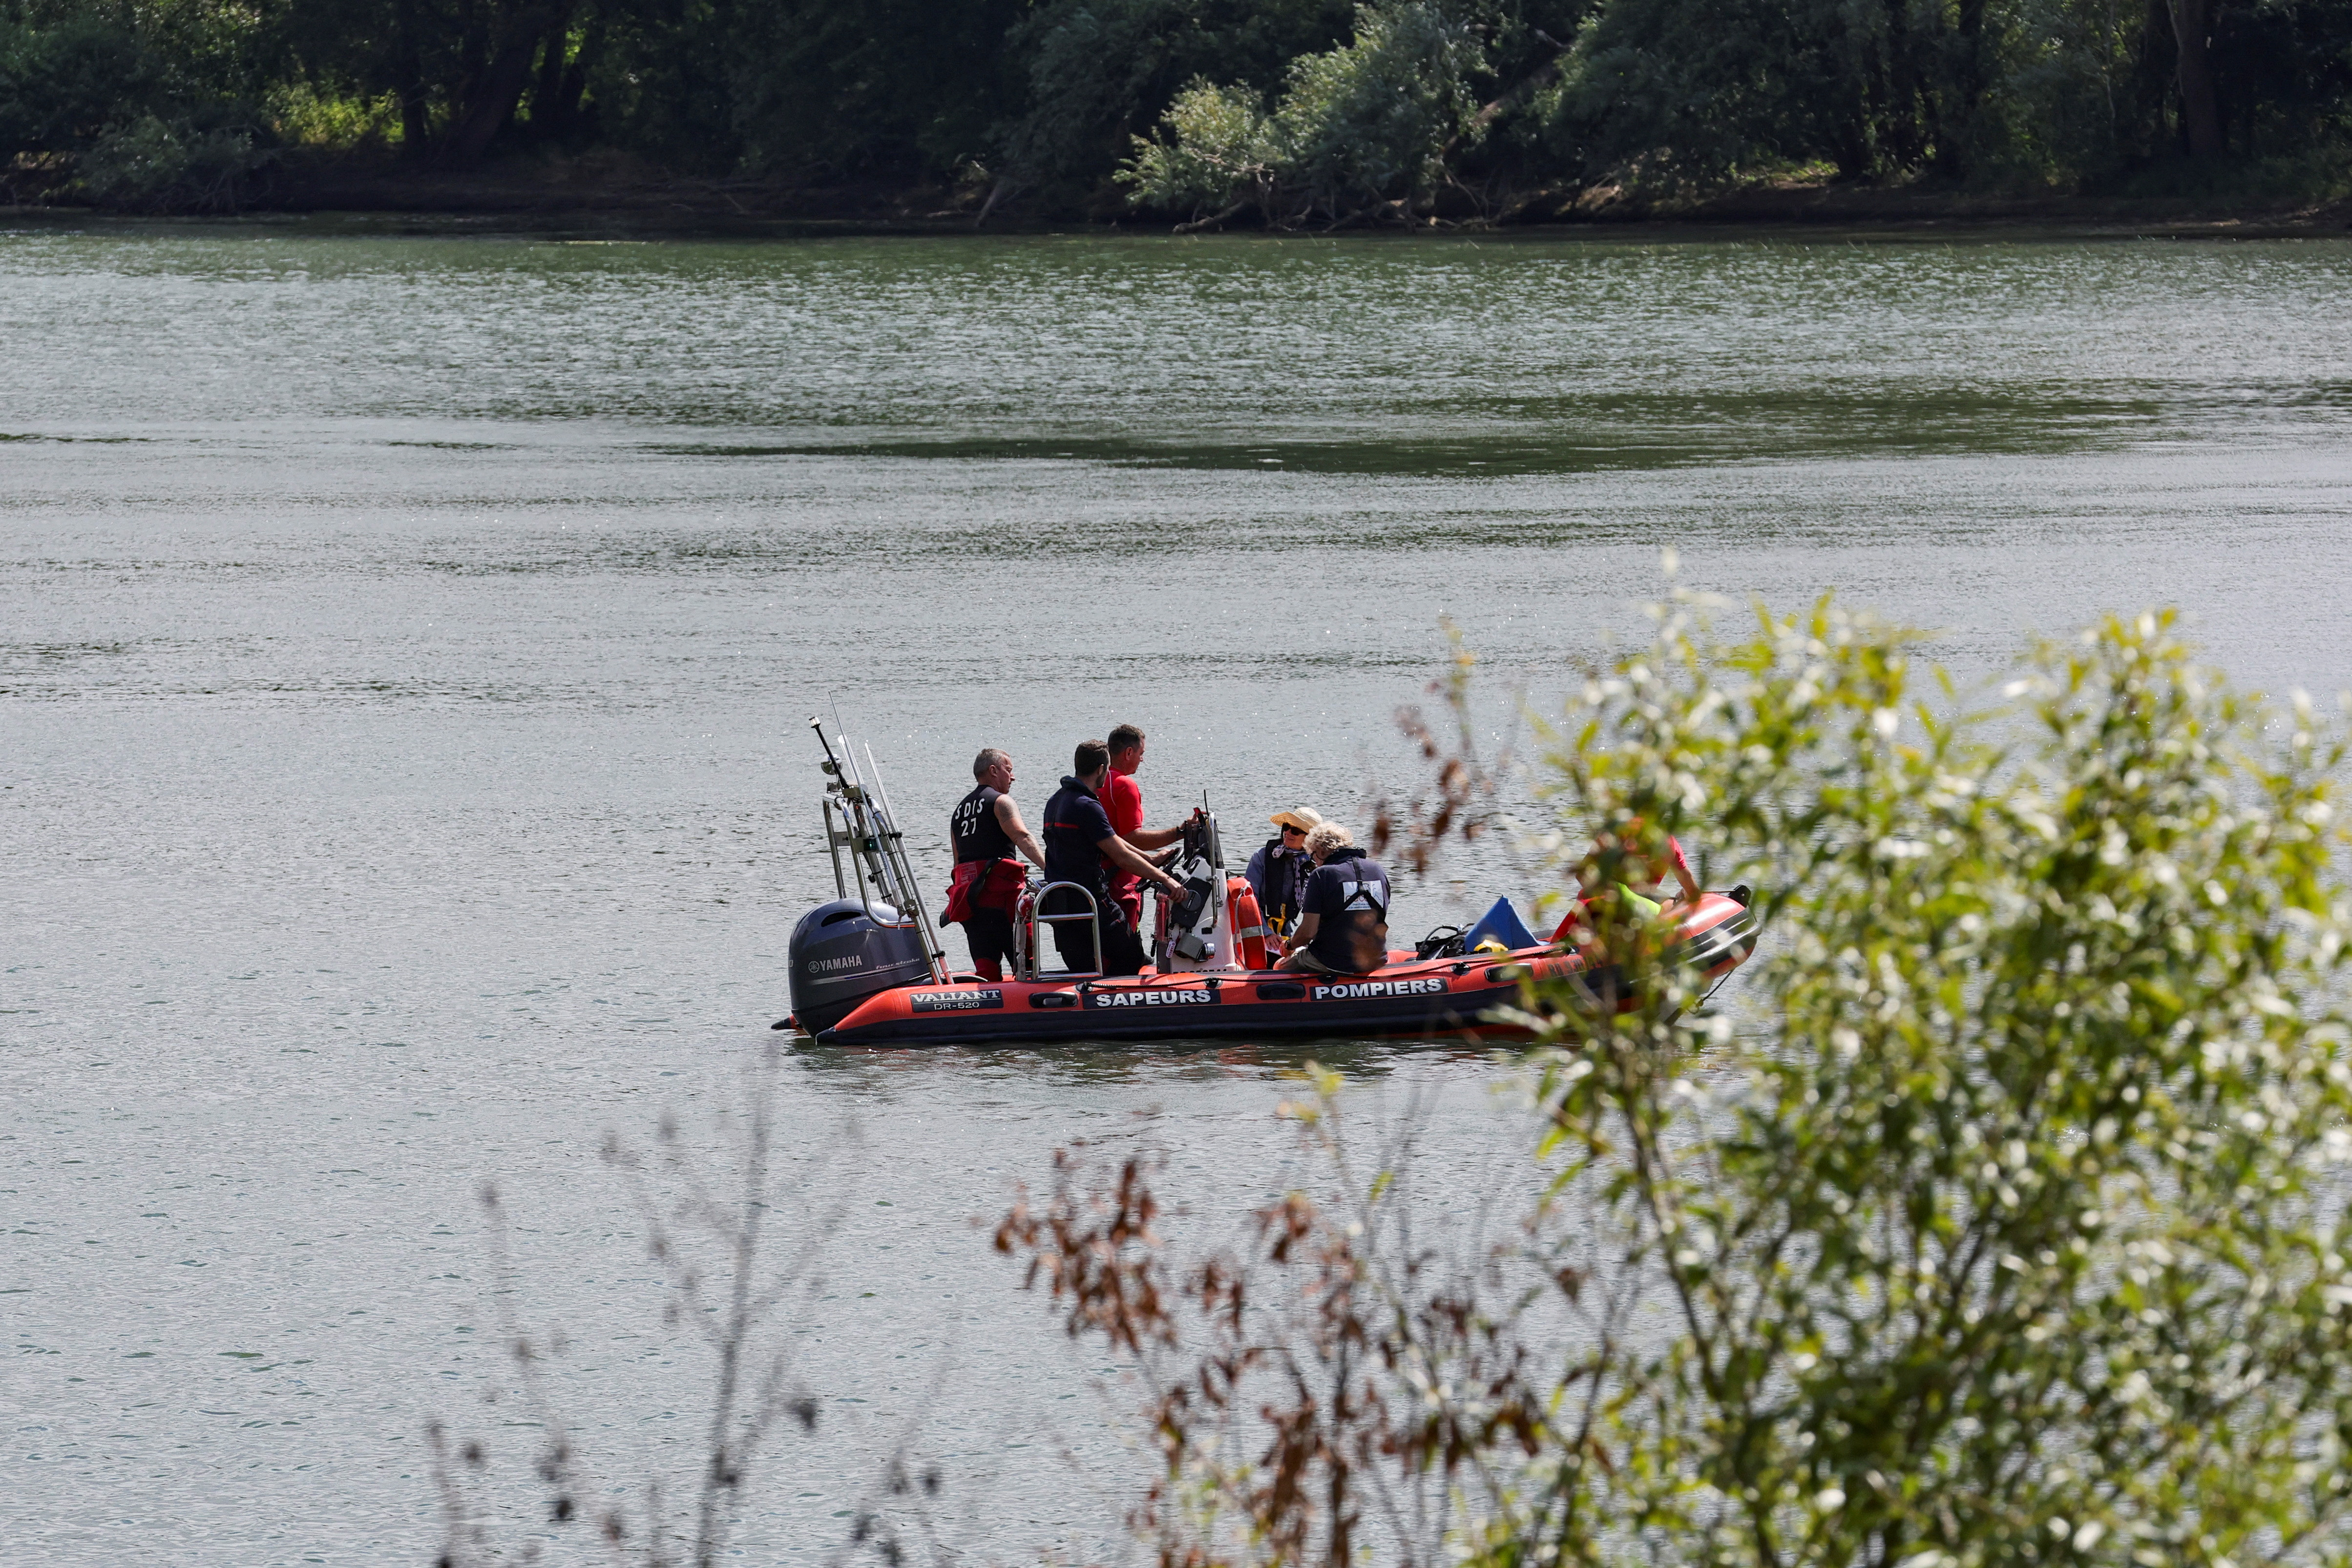 Buzos de rescate del departamento de bomberos patrullan en el río Sena en busca de una ballena Beluga perdida, en Les Andelys, Francia, el 5 de agosto de 2022. REUTERS/Pascal Rossignol